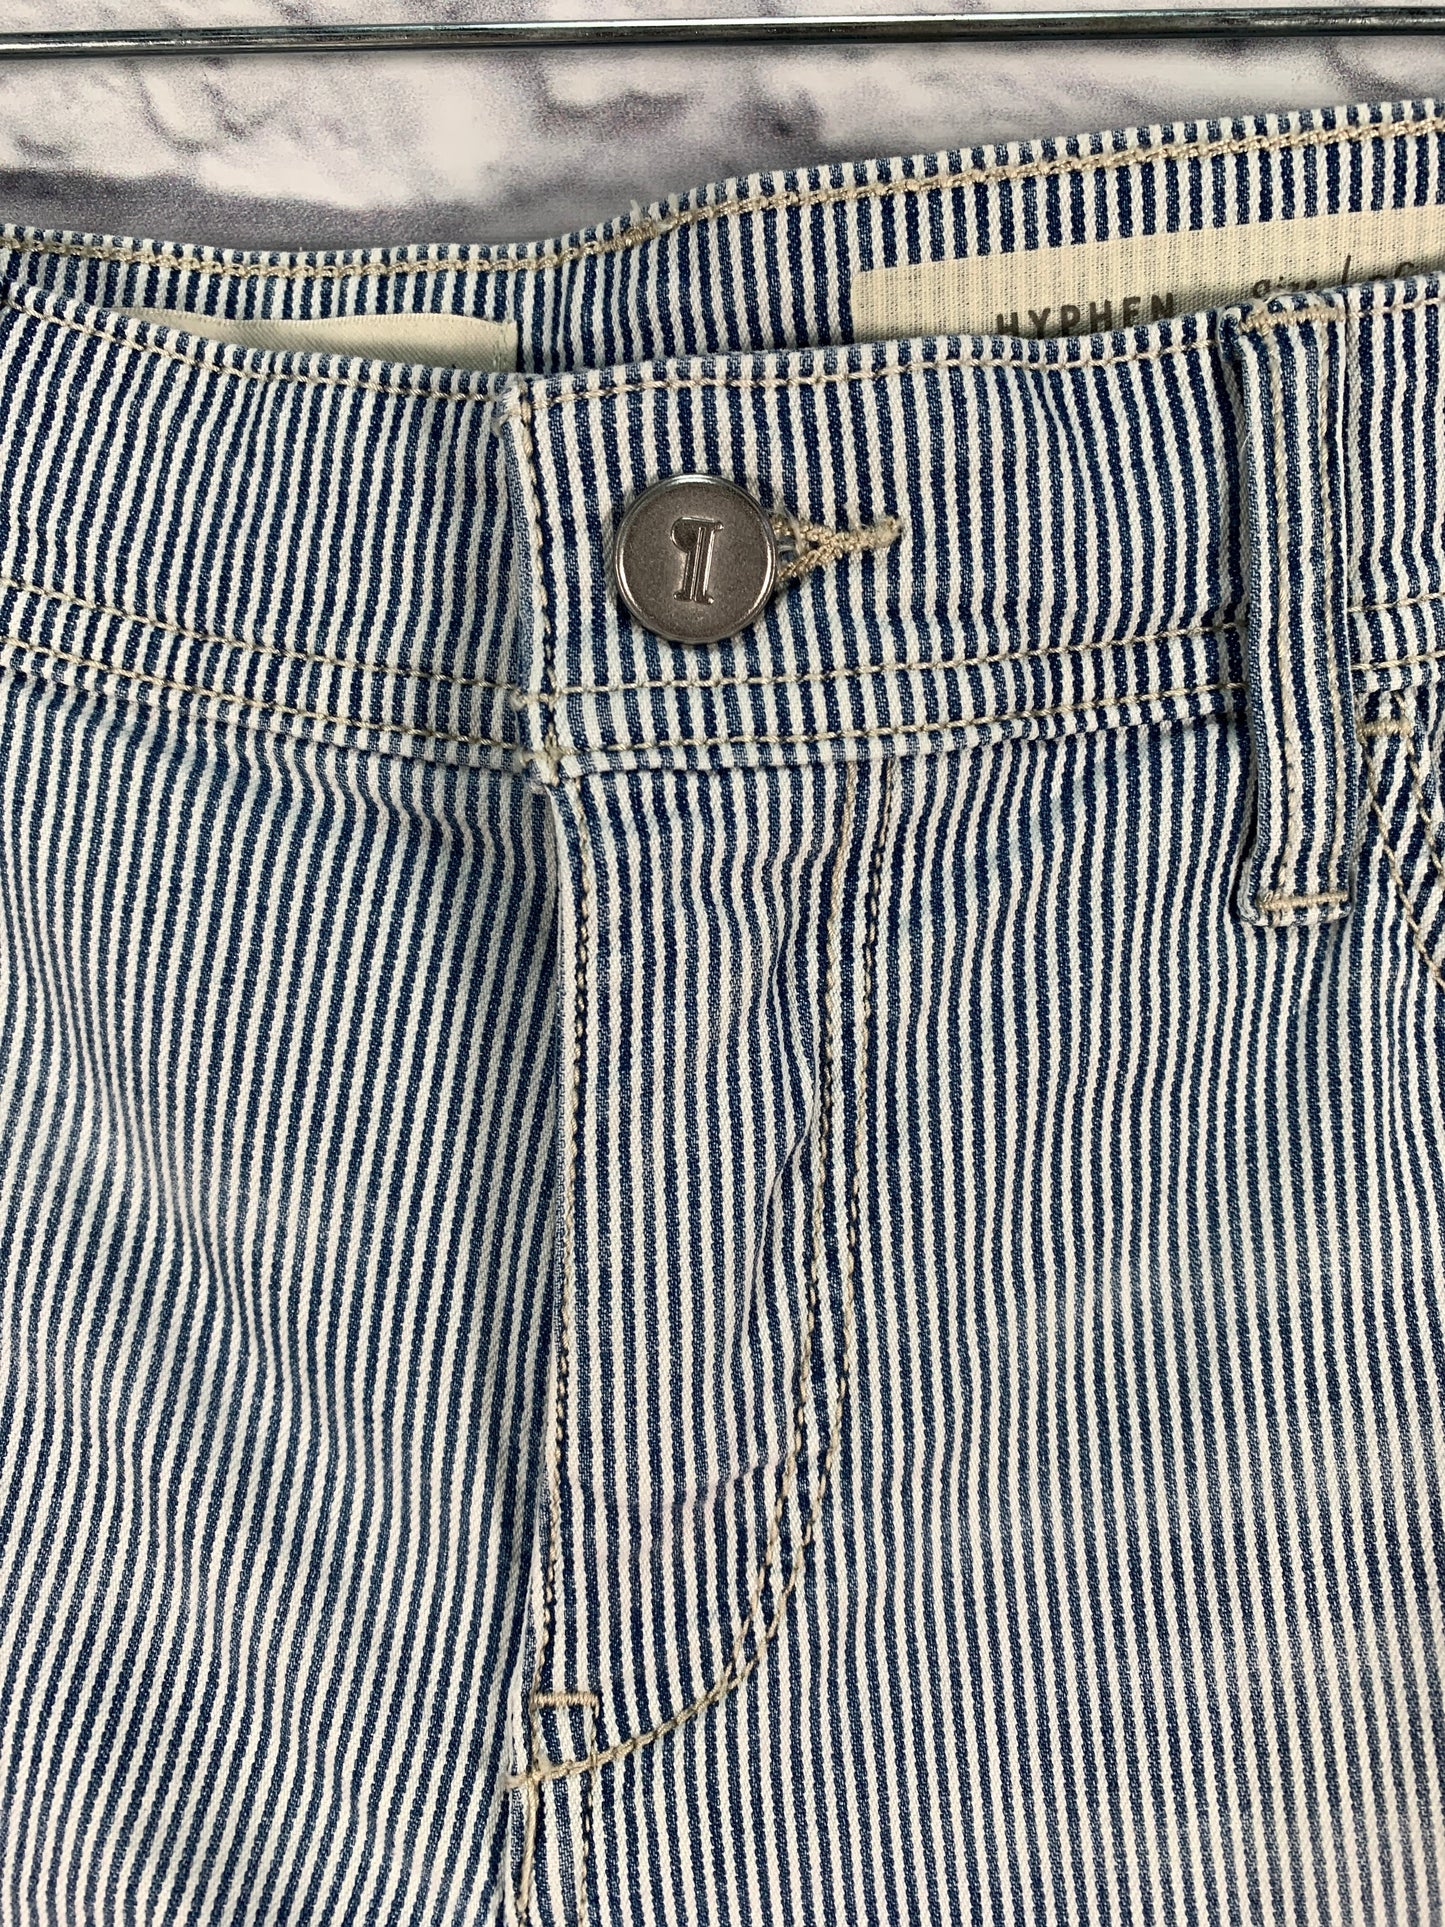 Blue & White Shorts Pilcro, Size 2